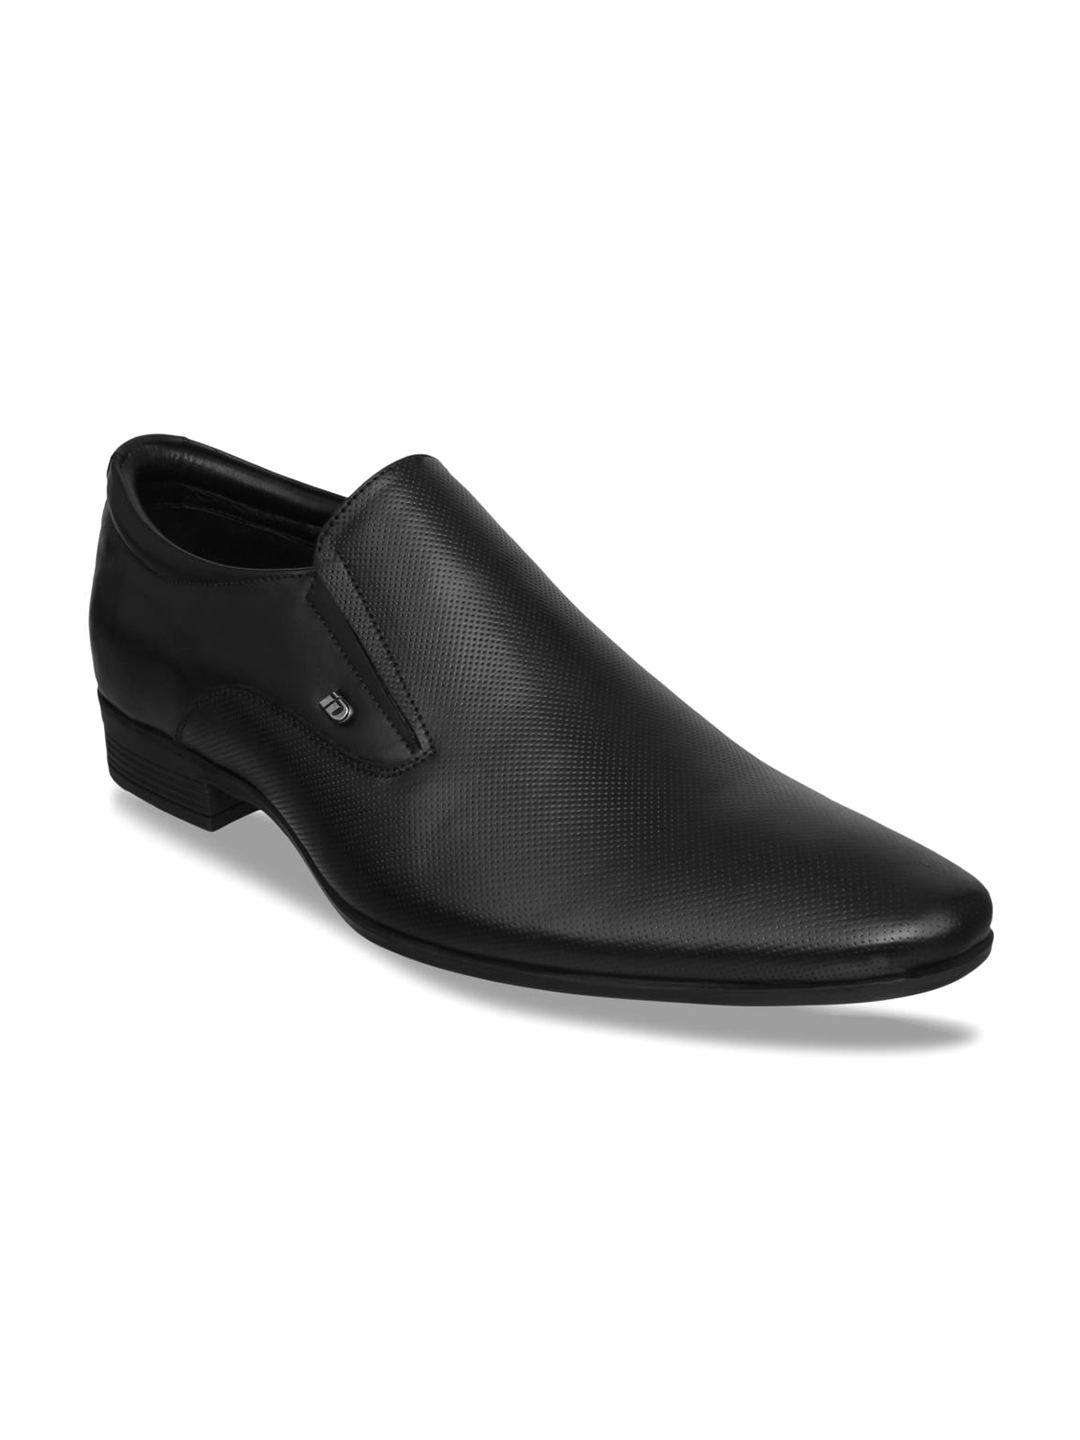 Buy ID Men Leather Black Formal Slip On Shoes - Formal Shoes for Men ...